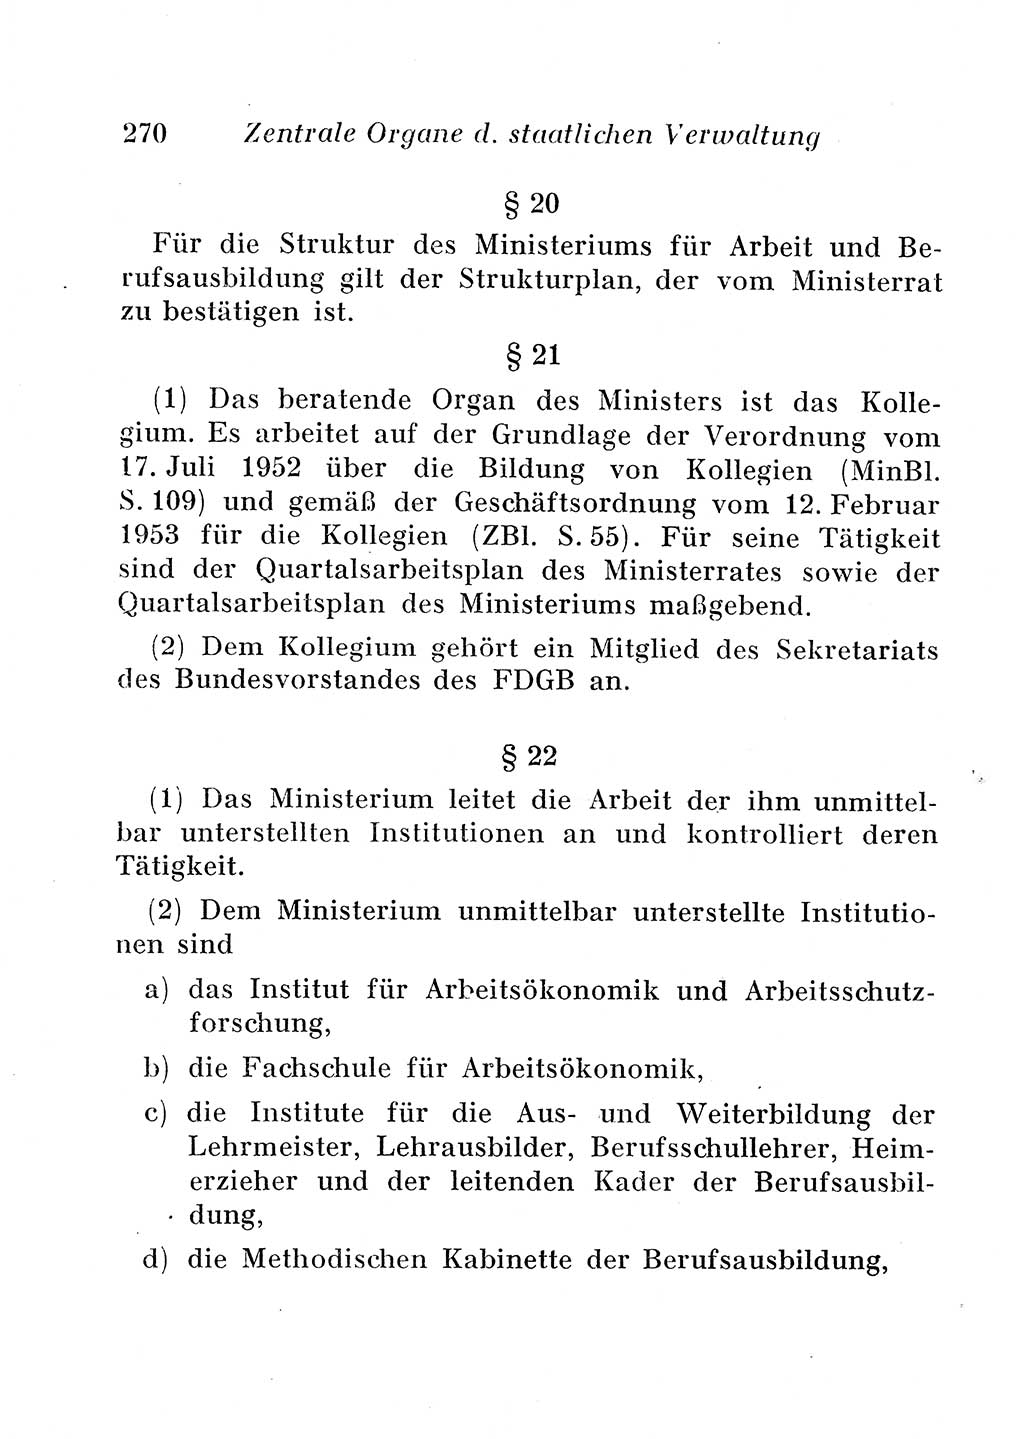 Staats- und verwaltungsrechtliche Gesetze der Deutschen Demokratischen Republik (DDR) 1958, Seite 270 (StVerwR Ges. DDR 1958, S. 270)